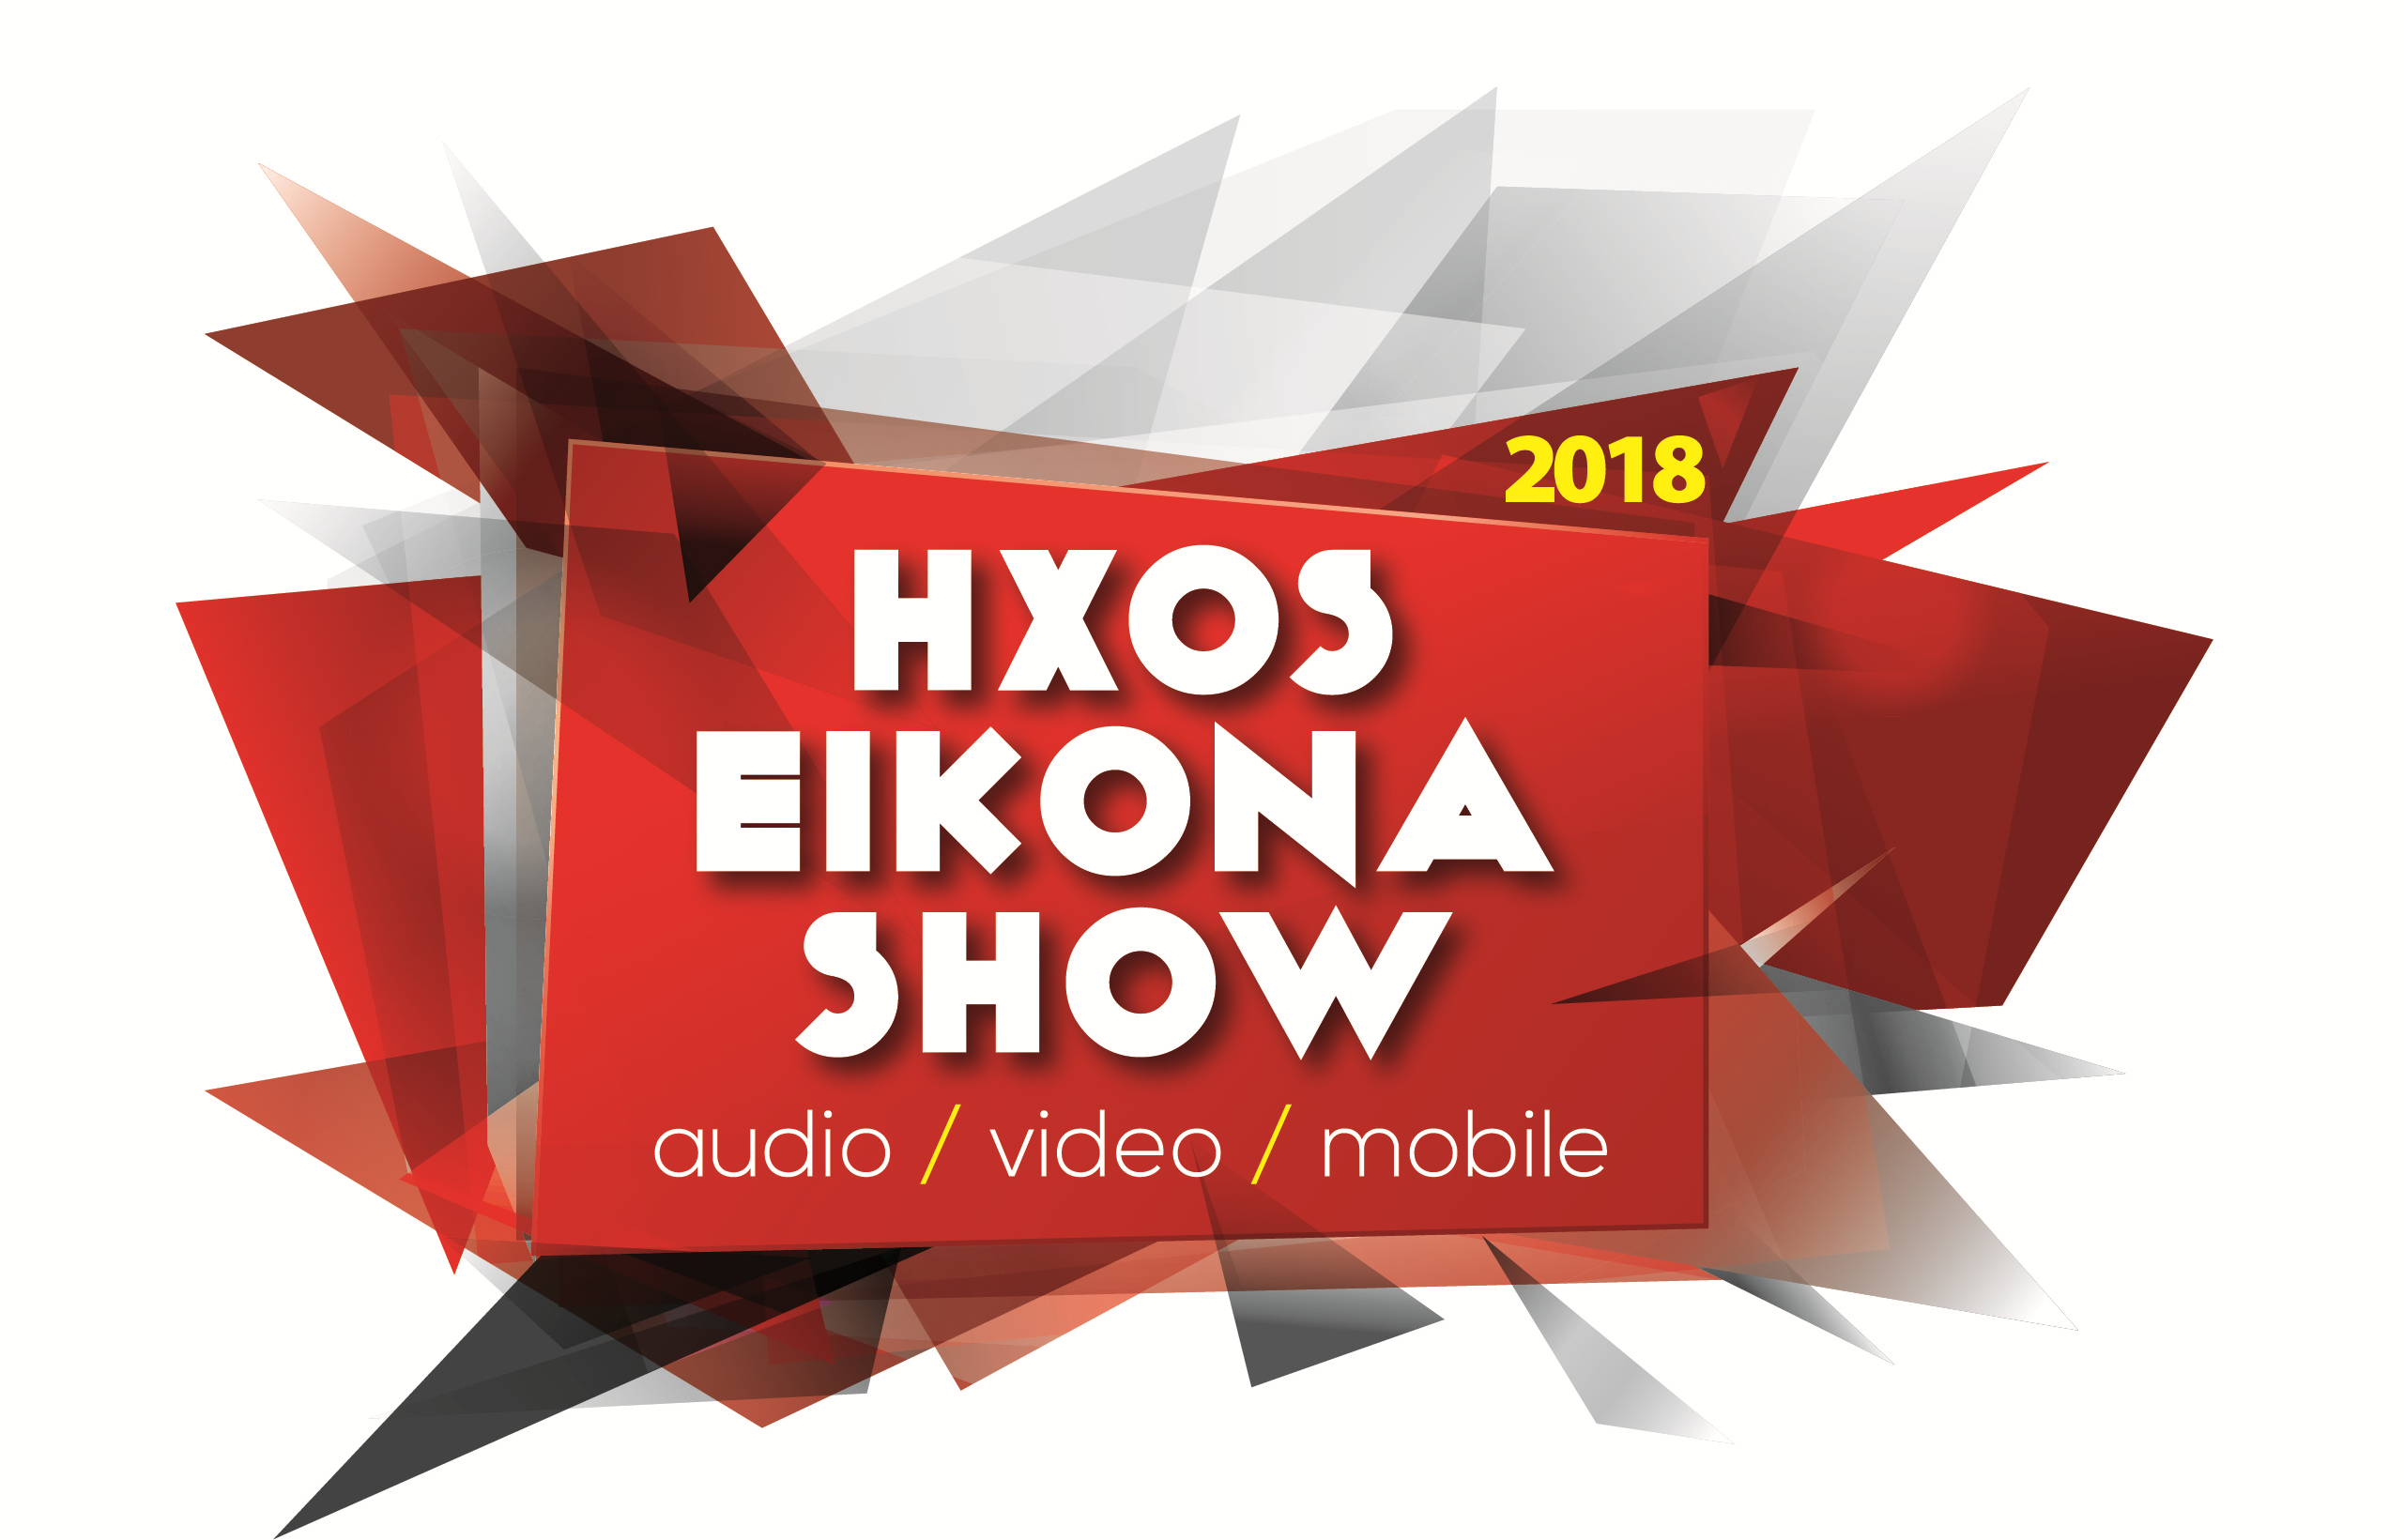 HXOS Eikona show 2018